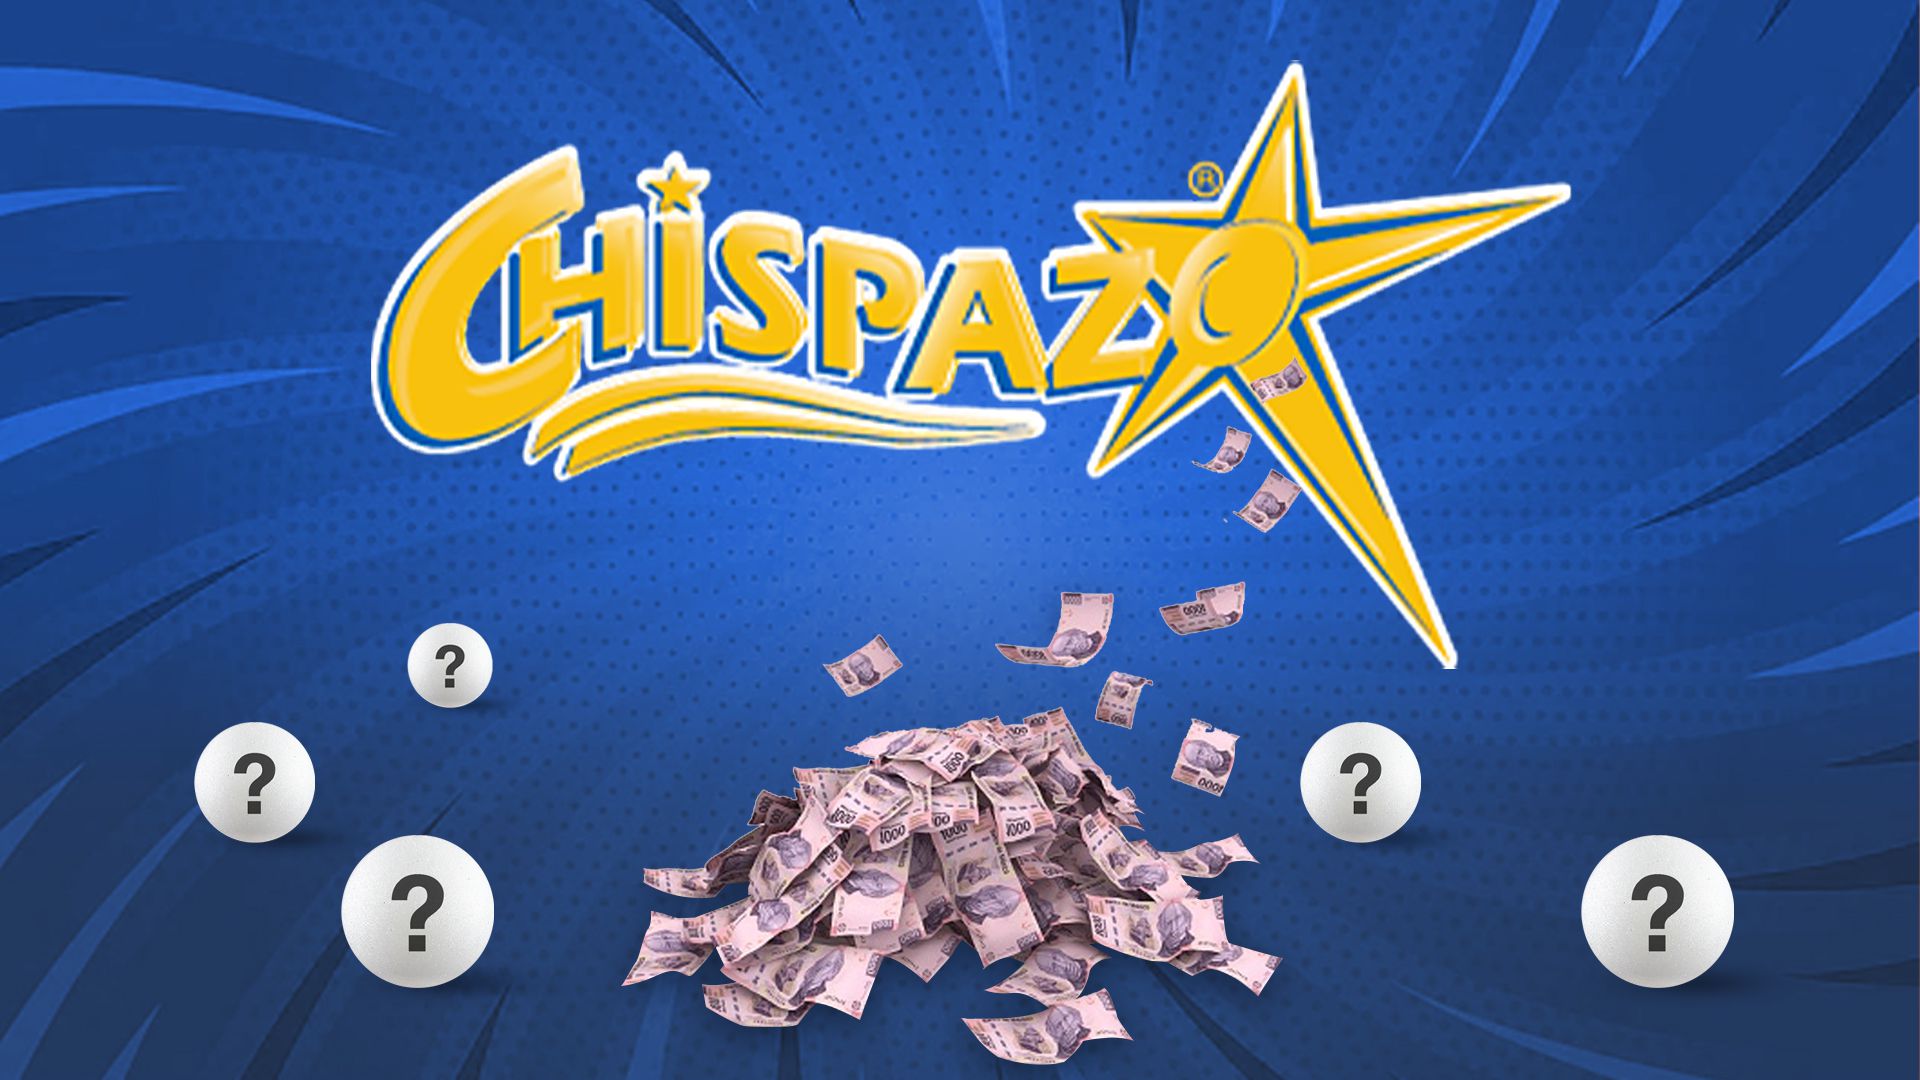 Chispazo: jugada ganadora y resultado del último sorteo